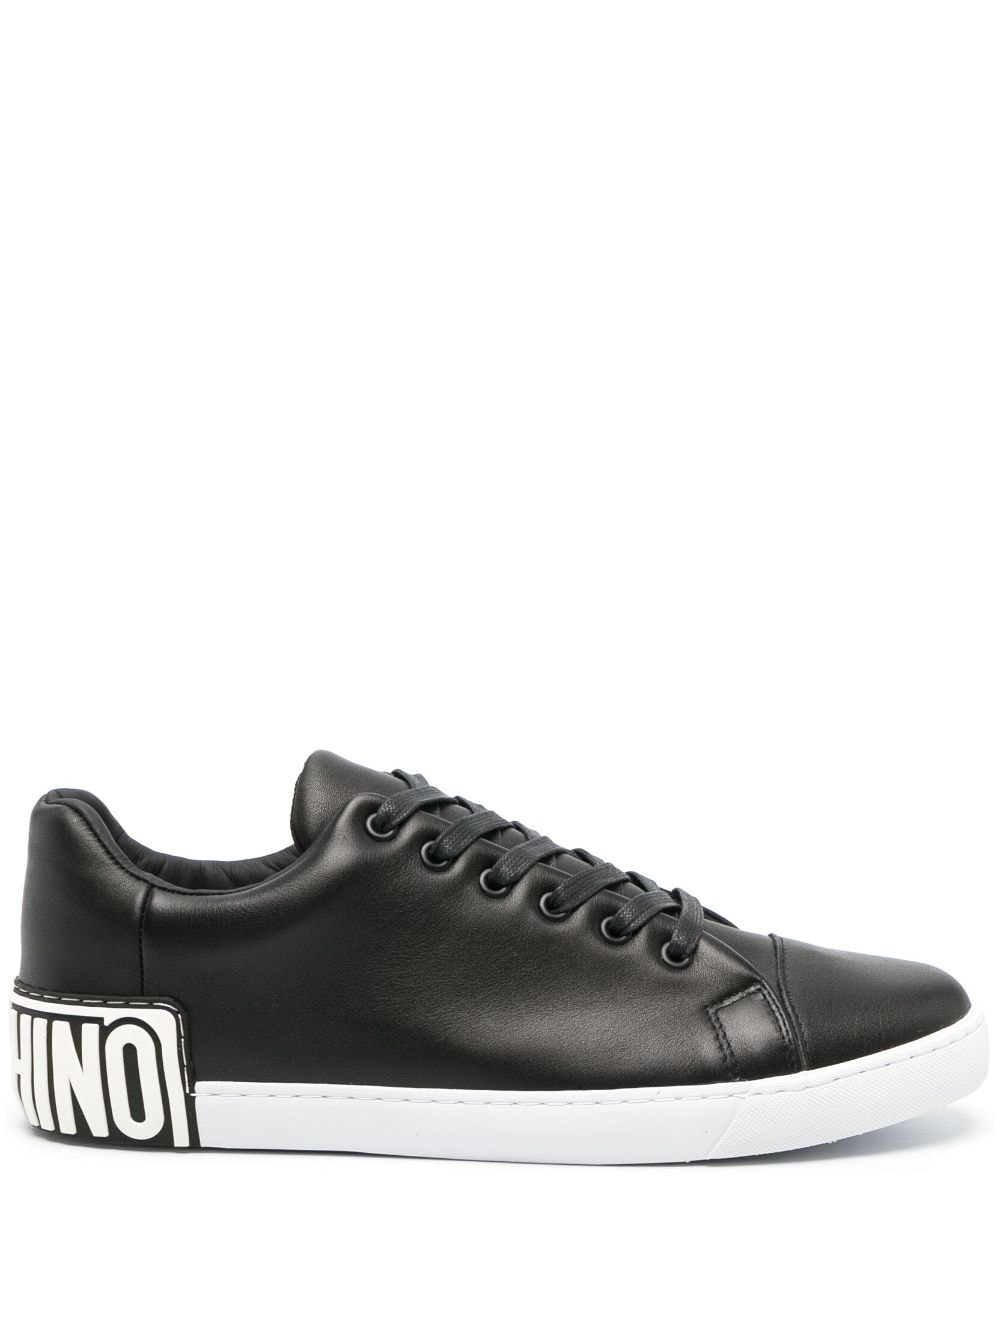 Maxilogo leather sneakers